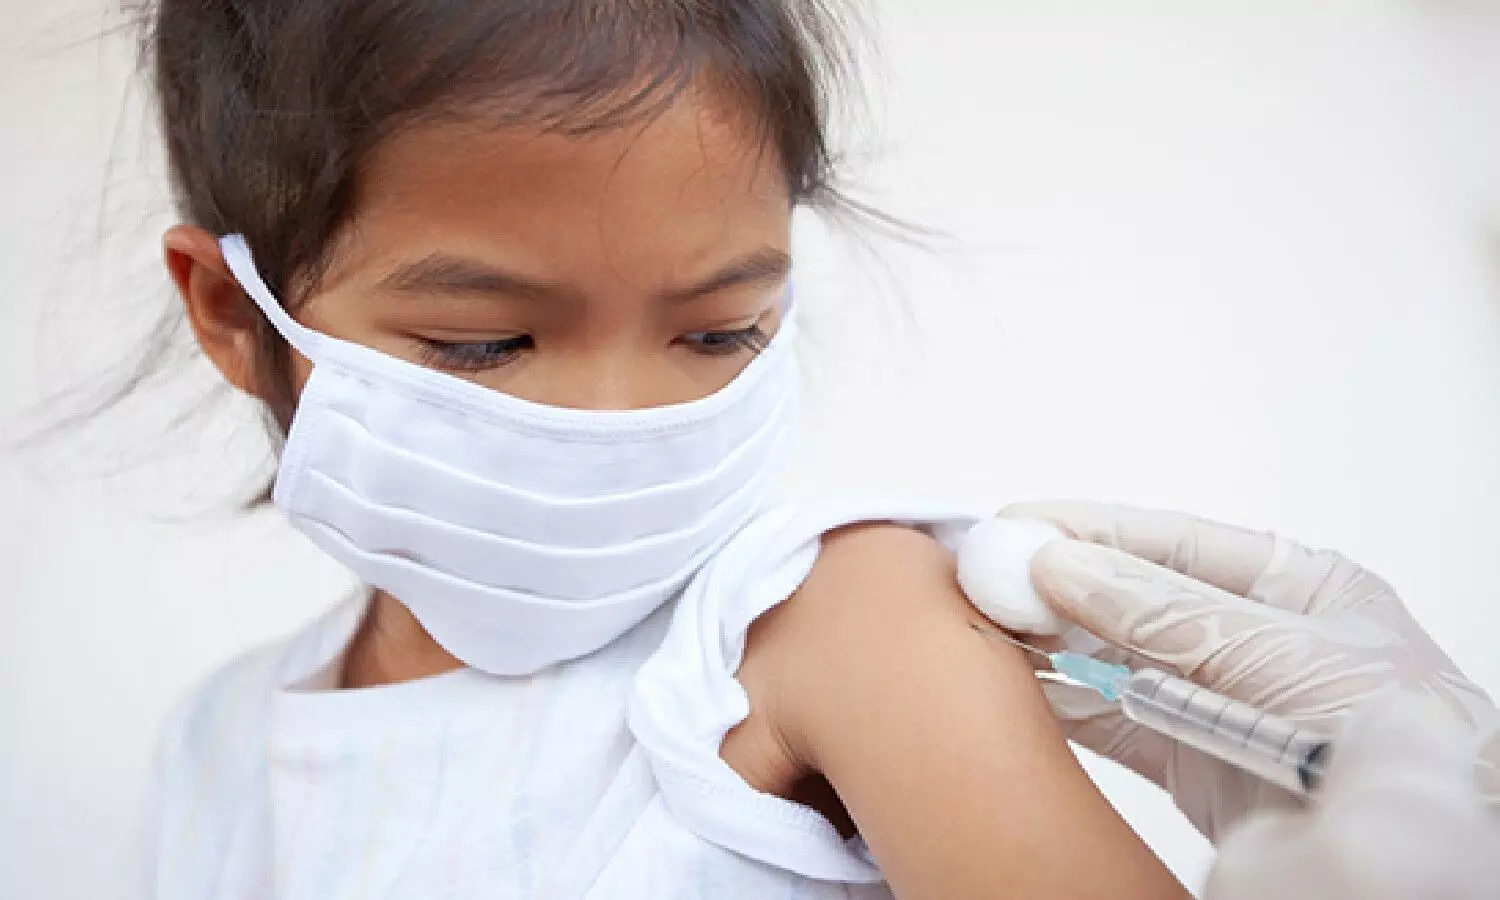 Coronavirus : बच्चों को कोरोना से बचाने की तैयारी, सिंगापुर-यूएई ने दी वैक्सीनेशन को मंजूरी